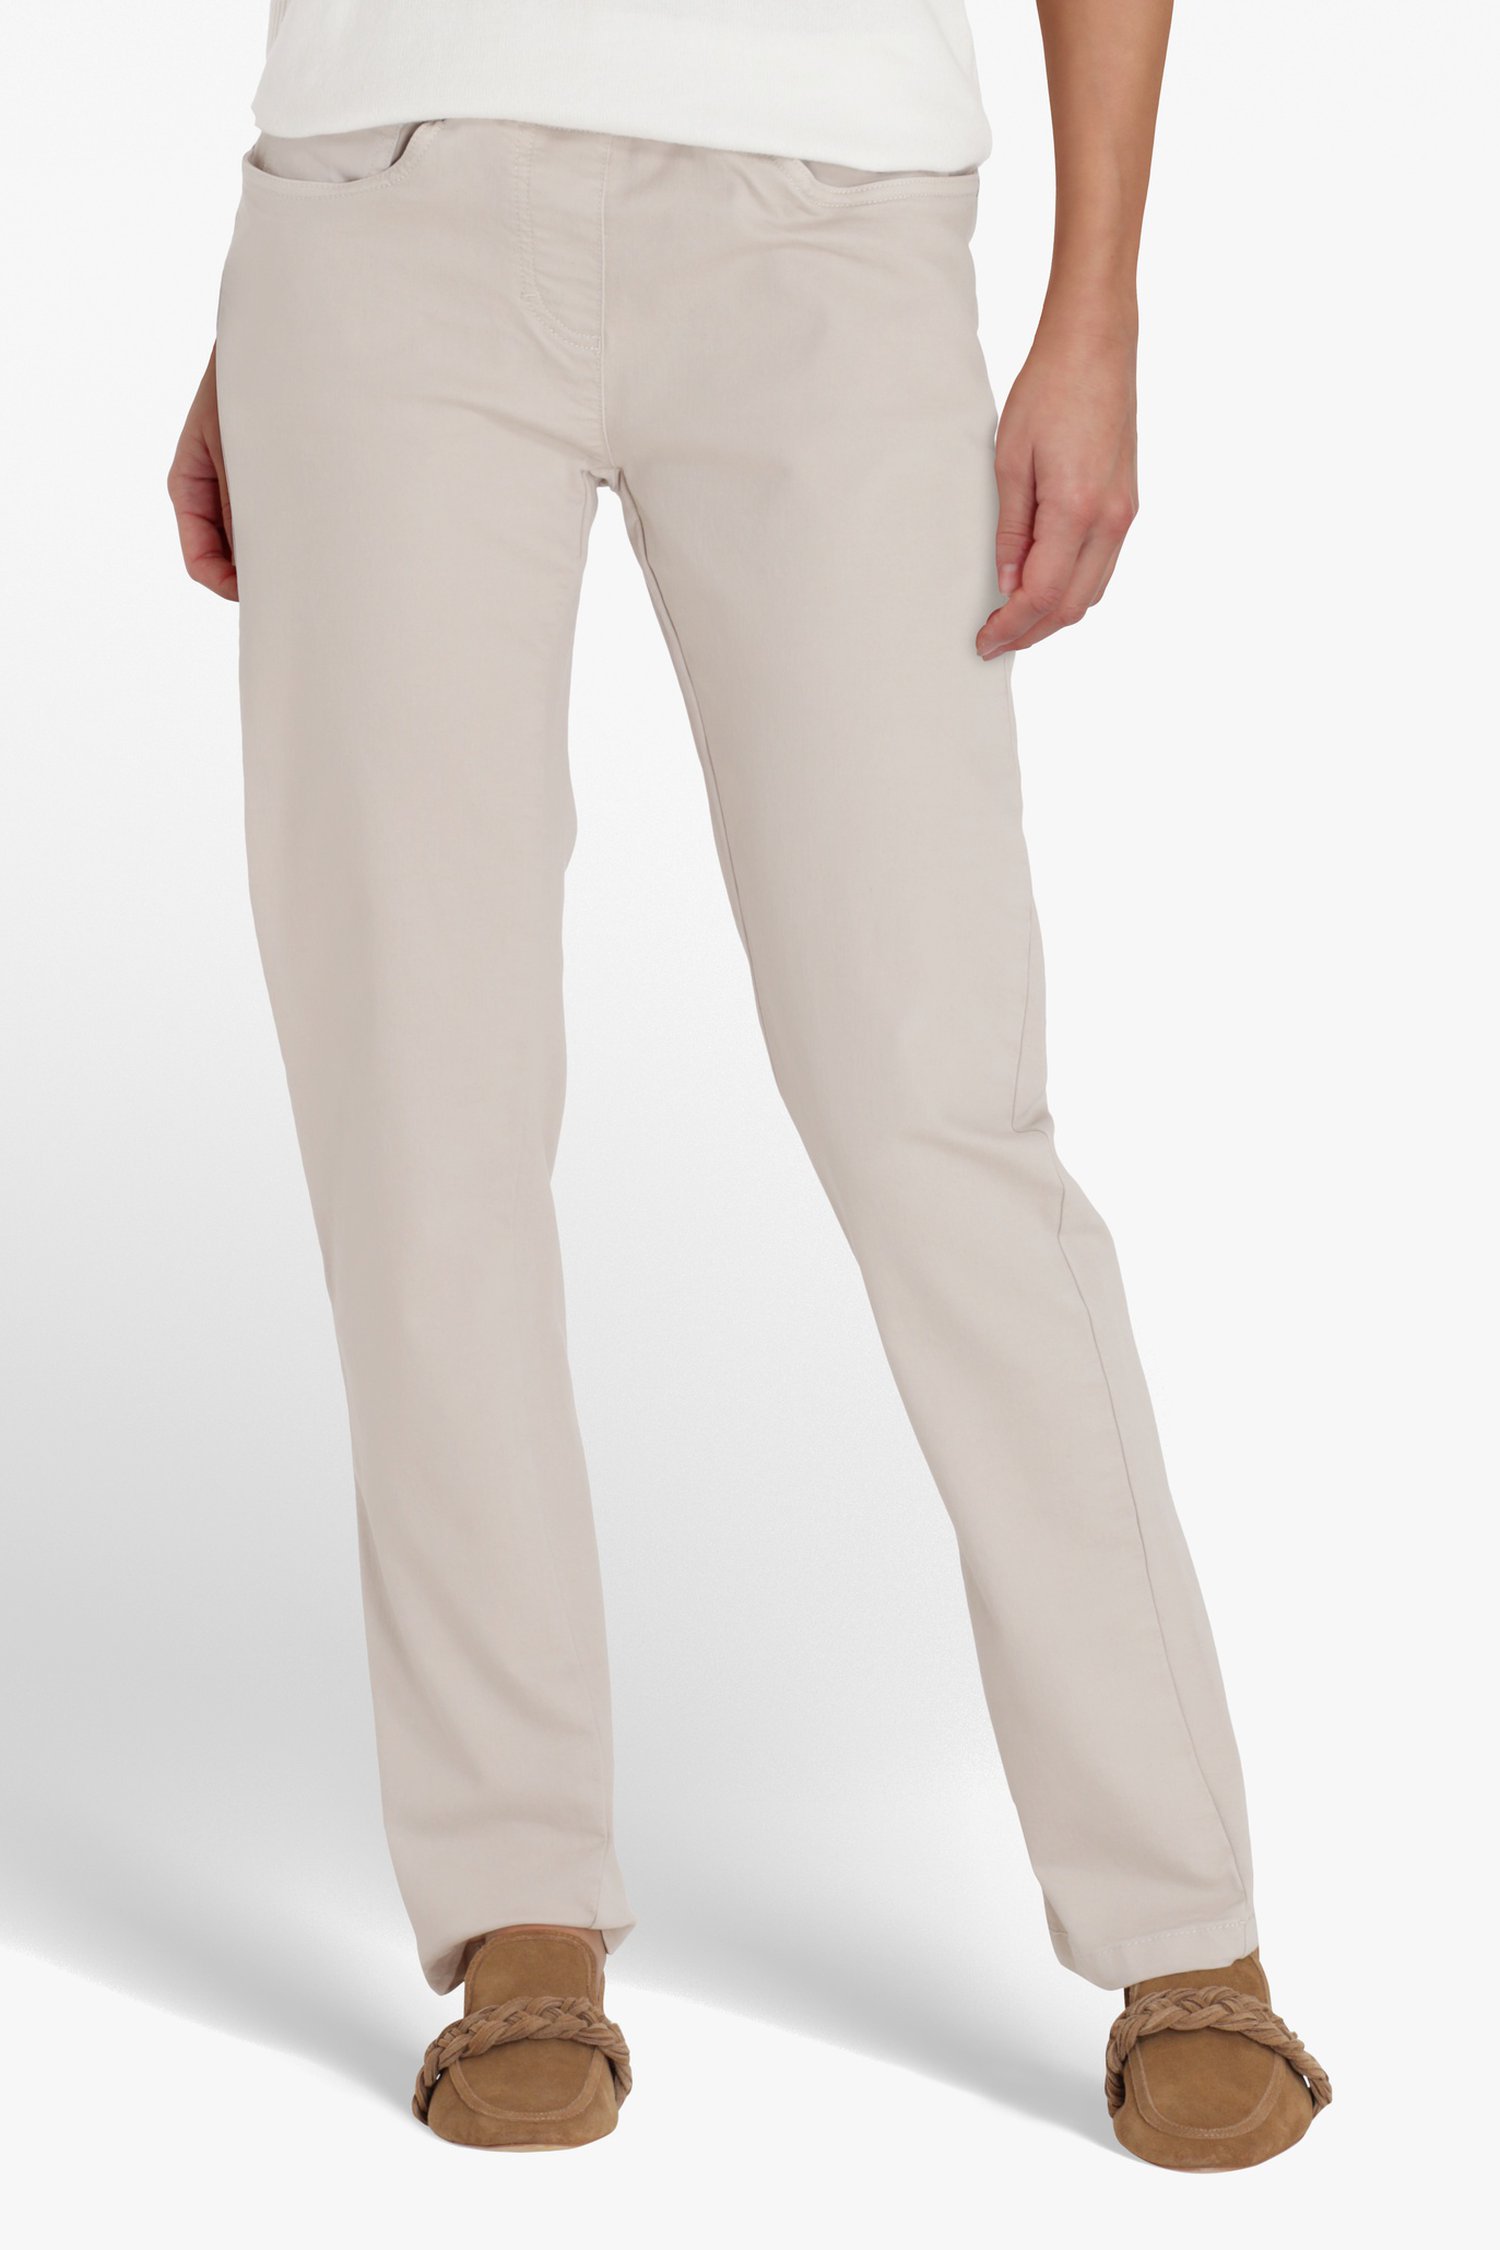 Pantalon beige - straight fit de Bicalla pour Femmes